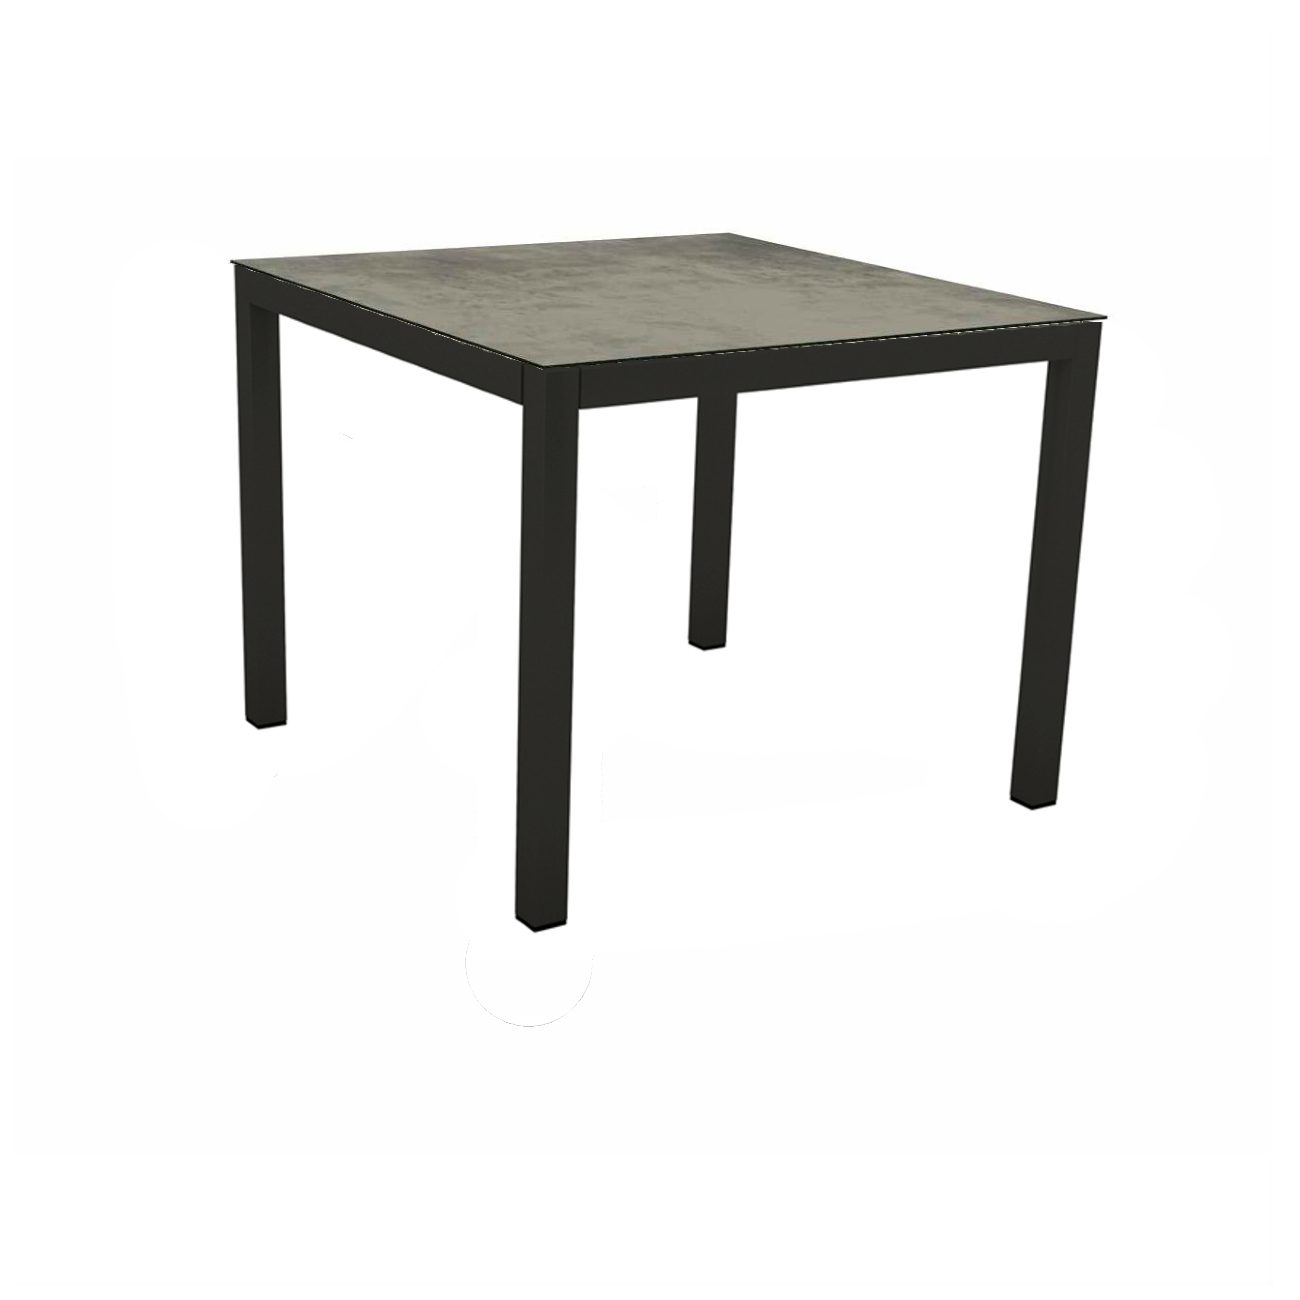 Stern Gartentisch, Gestell Aluminium schwarz matt, Tischplatte HPL Zement, 90x90 cm